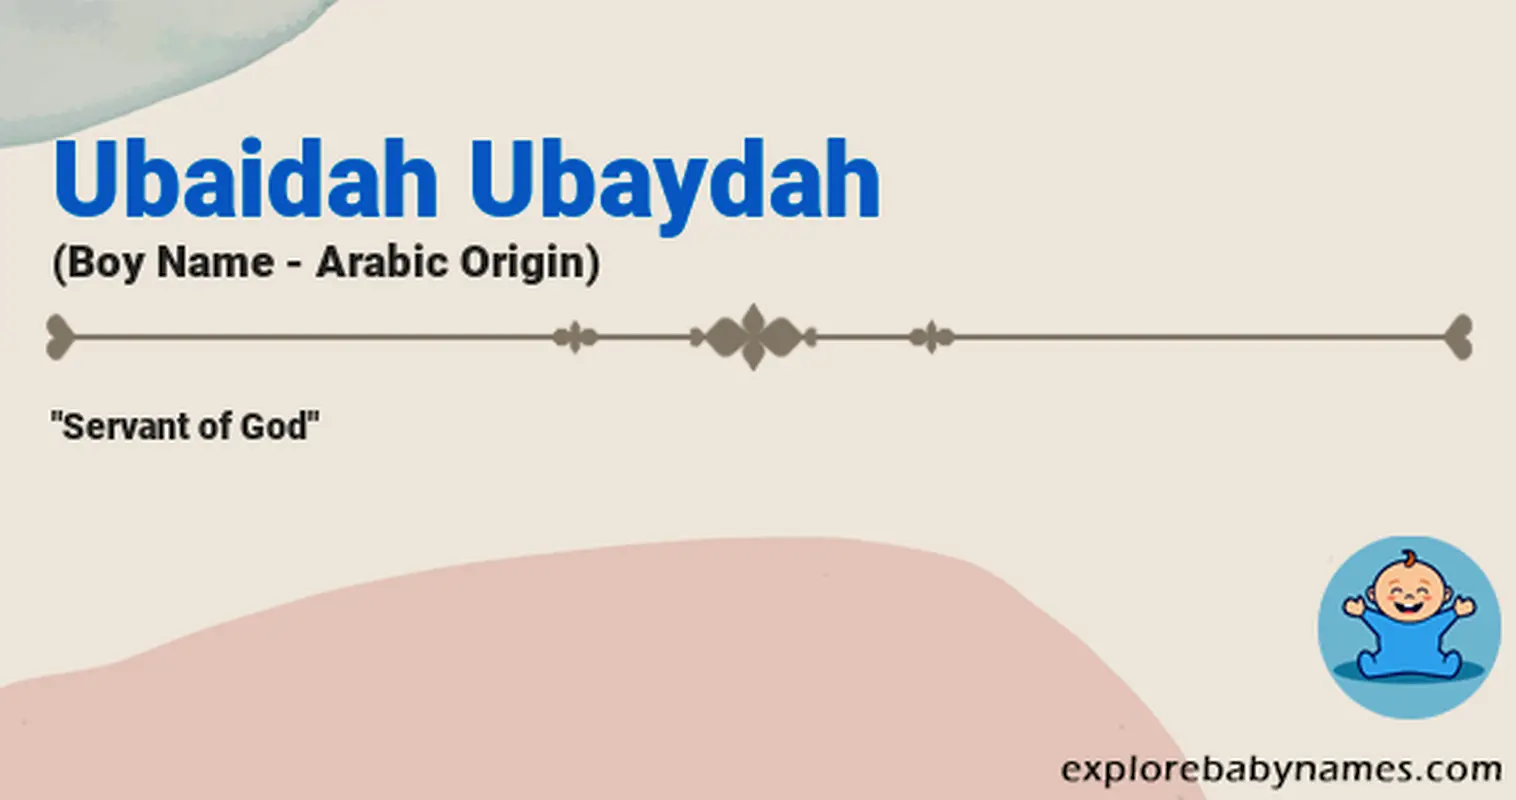 Meaning of Ubaidah Ubaydah